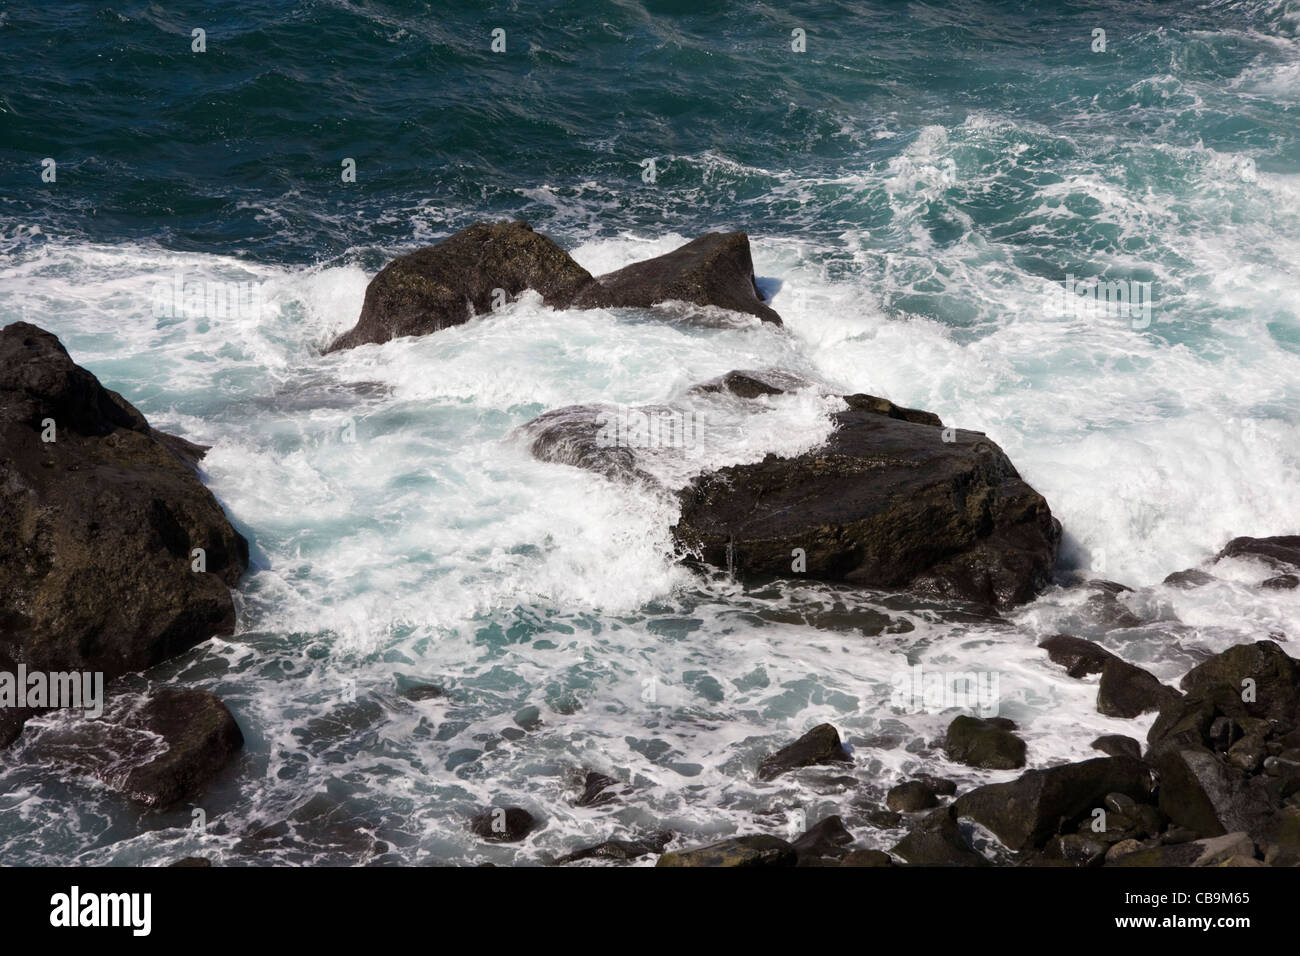 Hard rocks and rough seas, Camara de Lobos, near Funchal, Madeira Stock Photo